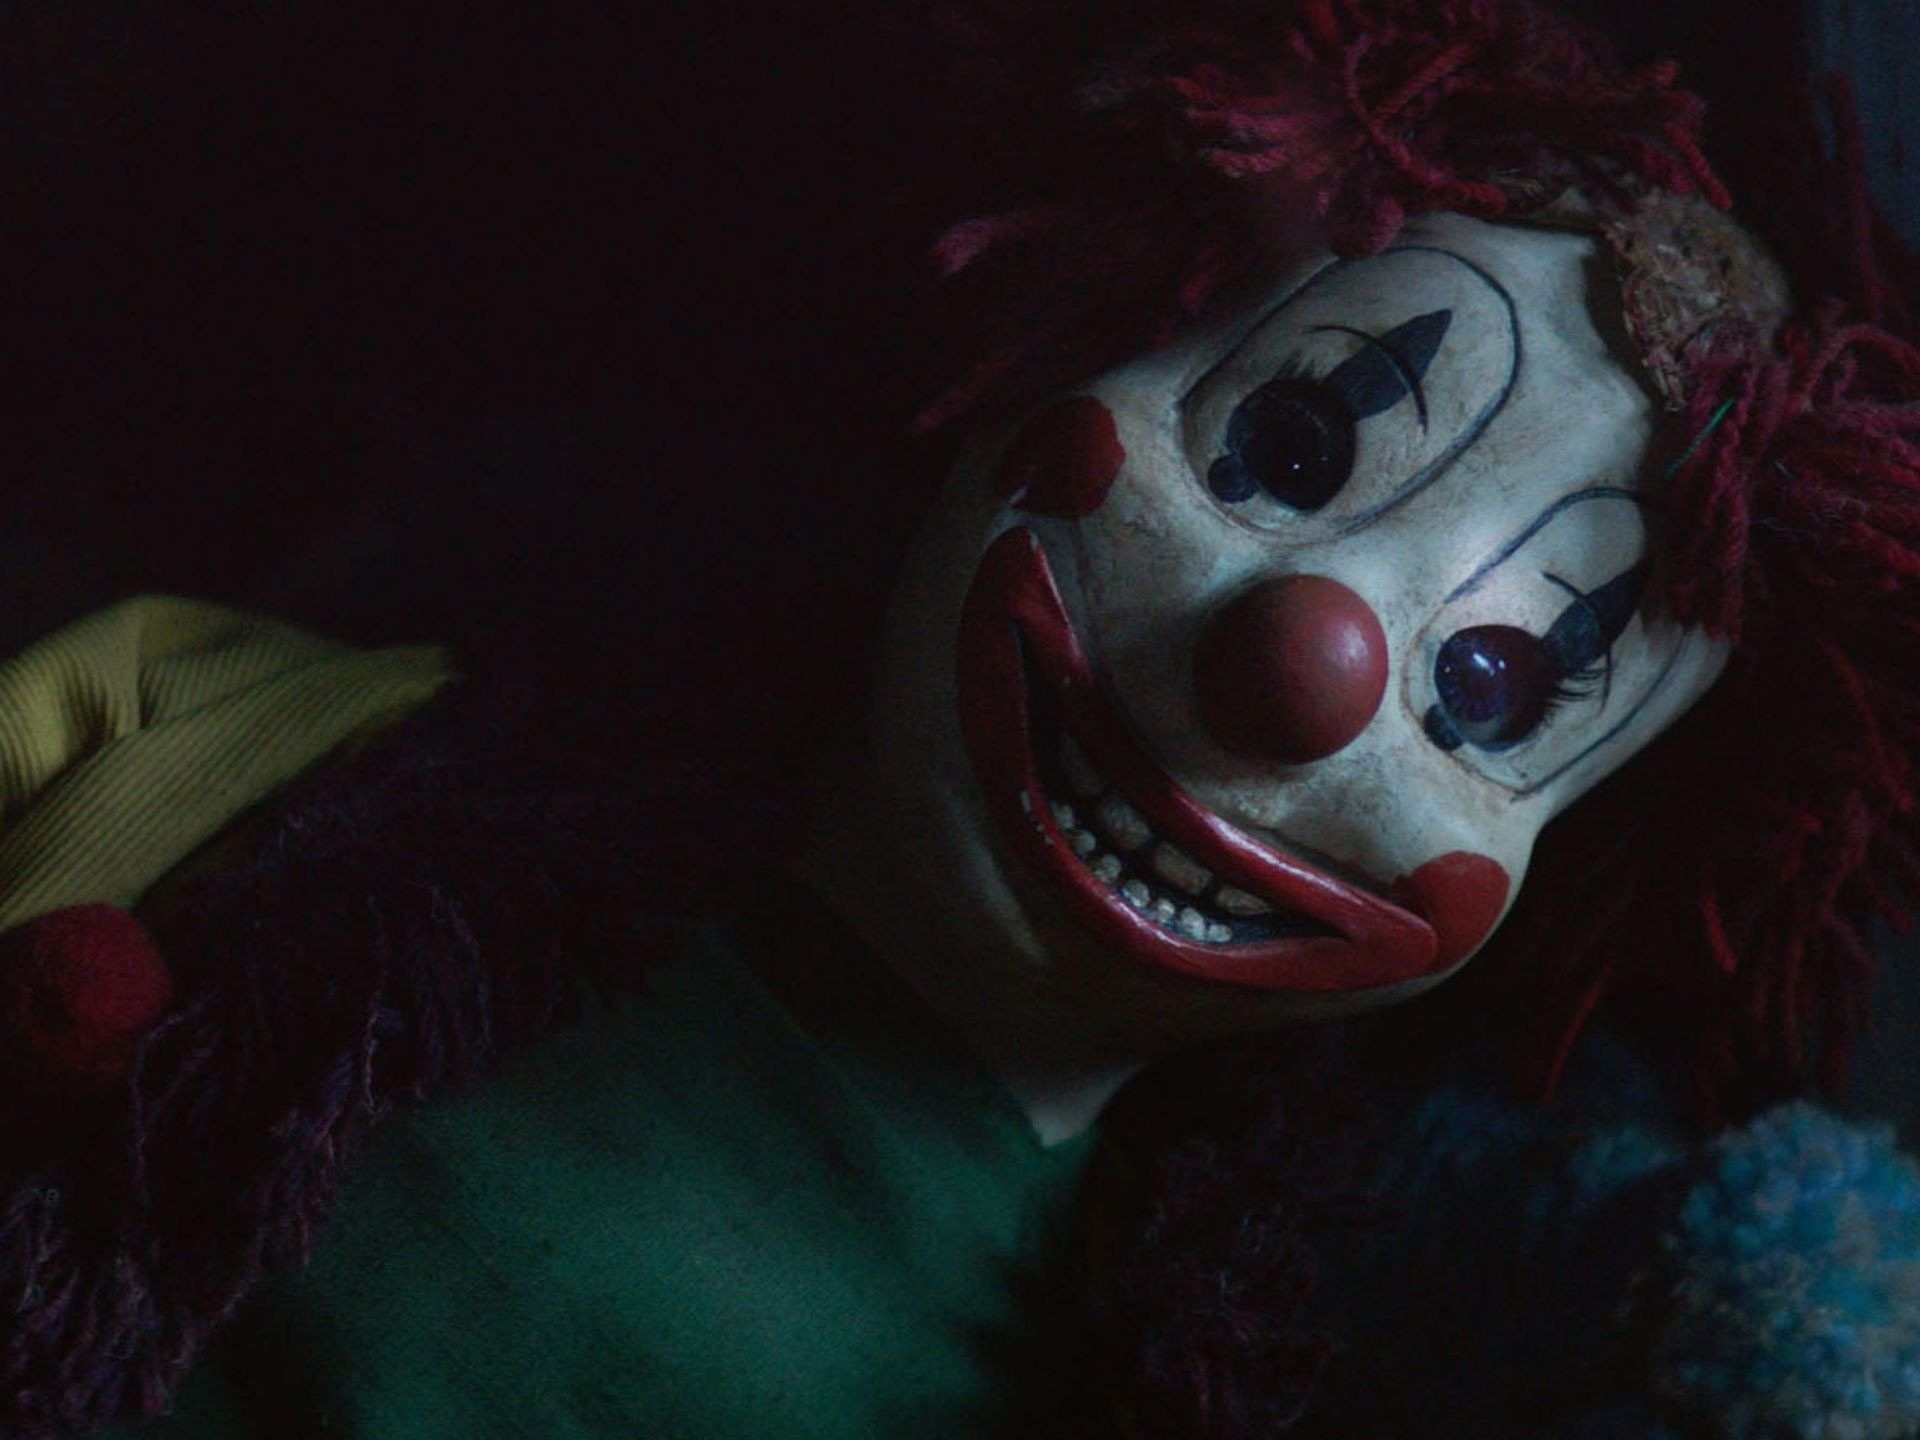 A creepy clown doll with a creepy smile. - Clown